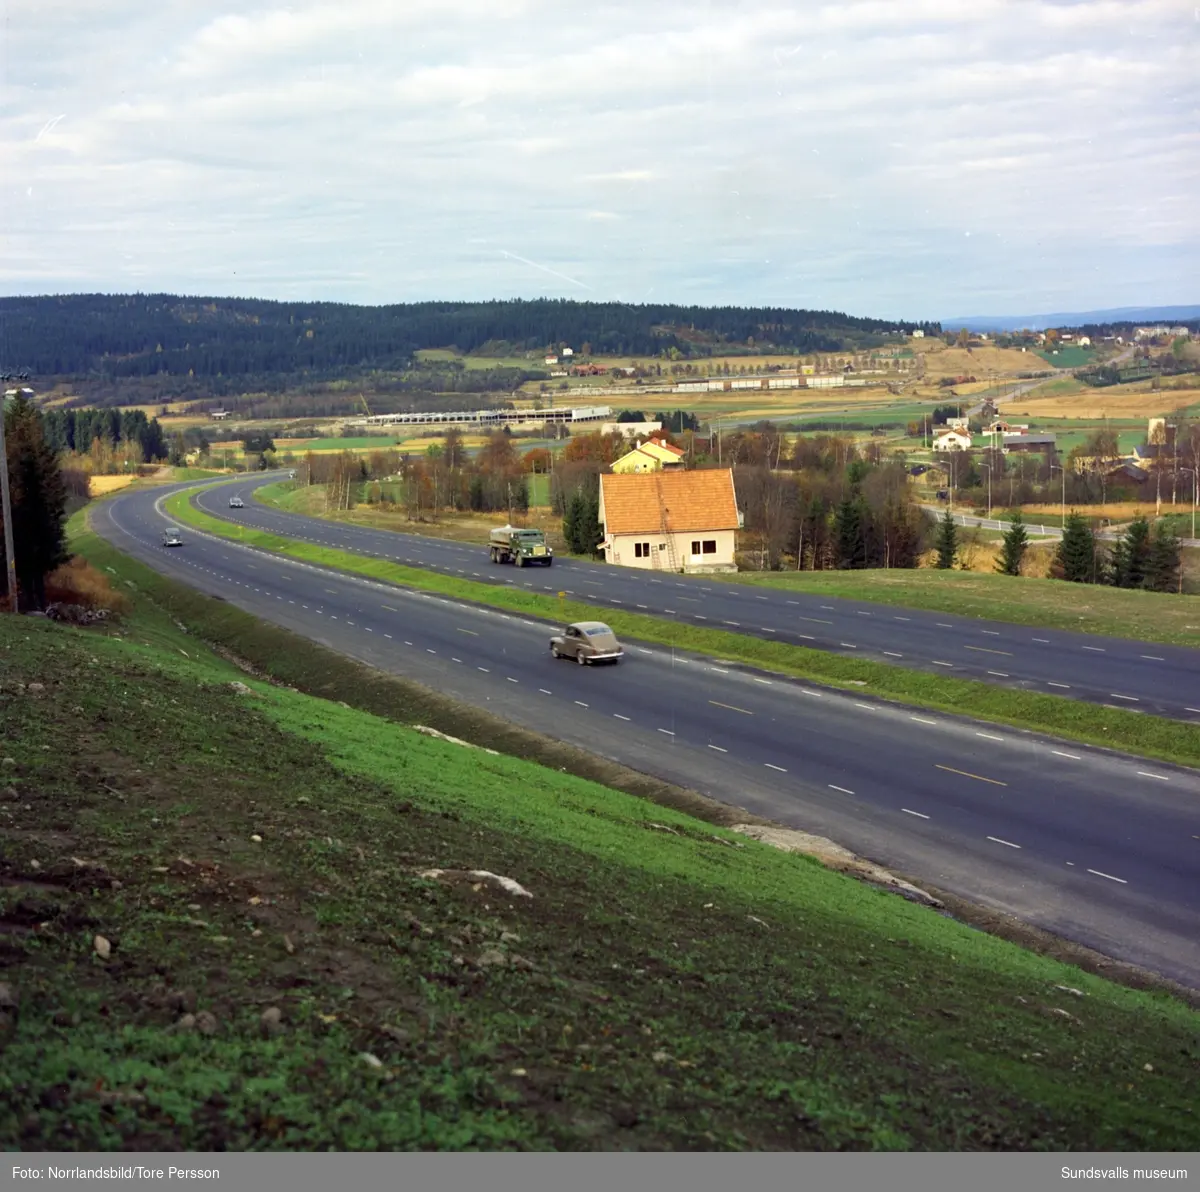 Bilder av den färdiga första delen av motorvägen mellan Bydalen och Birsta.